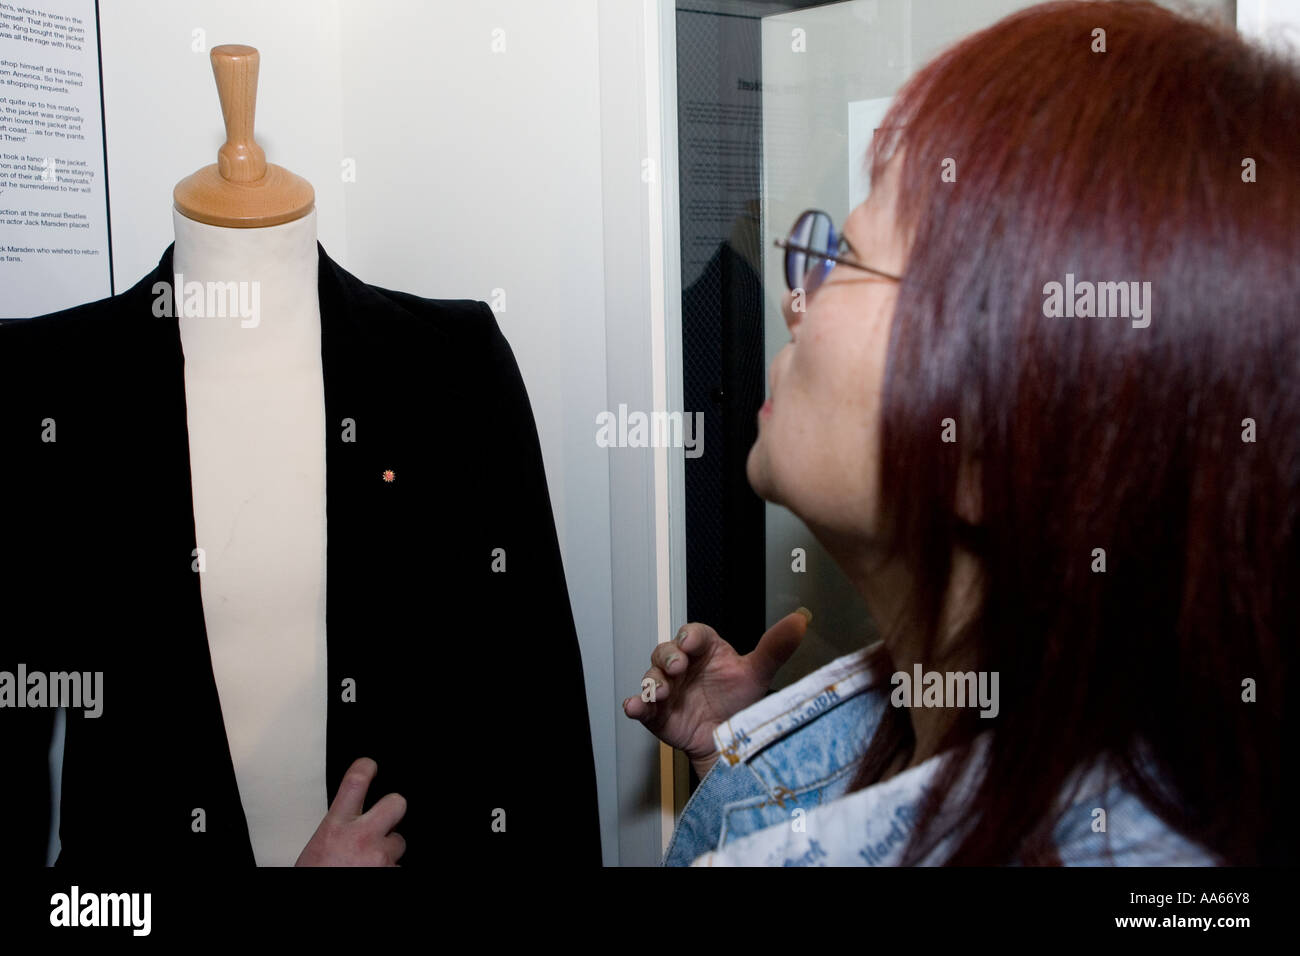 May Pang looking at John Lennons Jacket Stock Photo